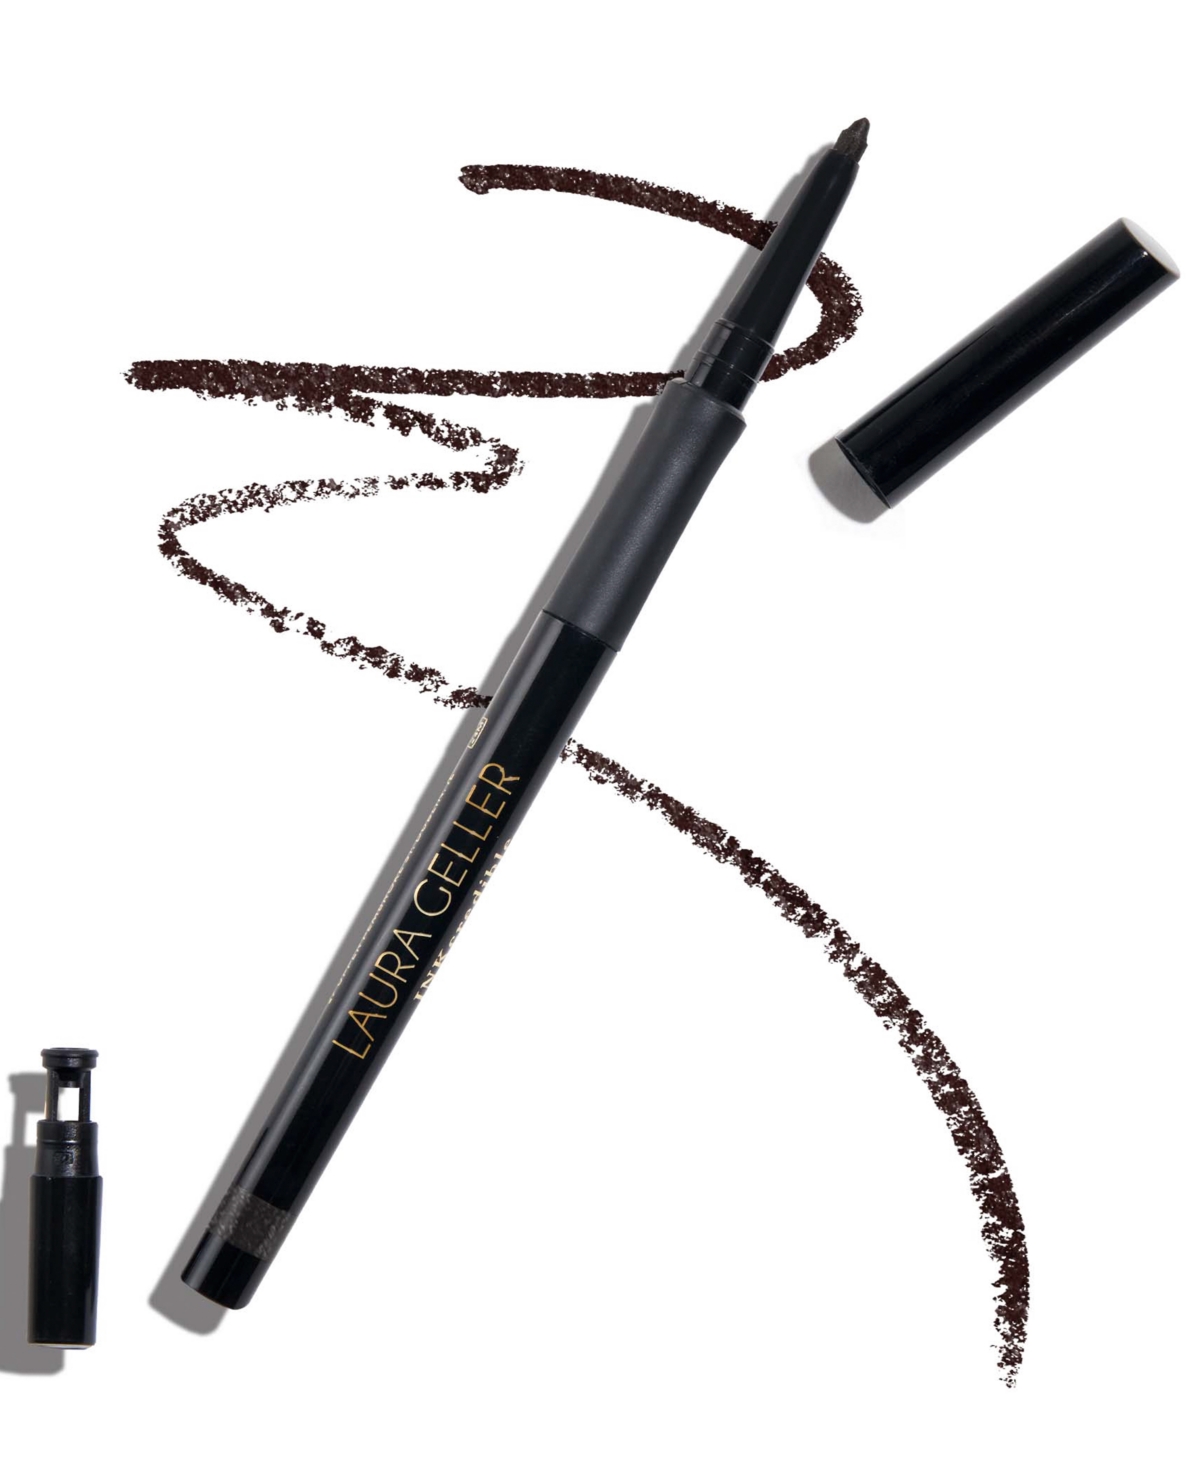 Laura Geller Beauty Inkcredible Waterproof Gel Eyeliner Pencil In After Midnight